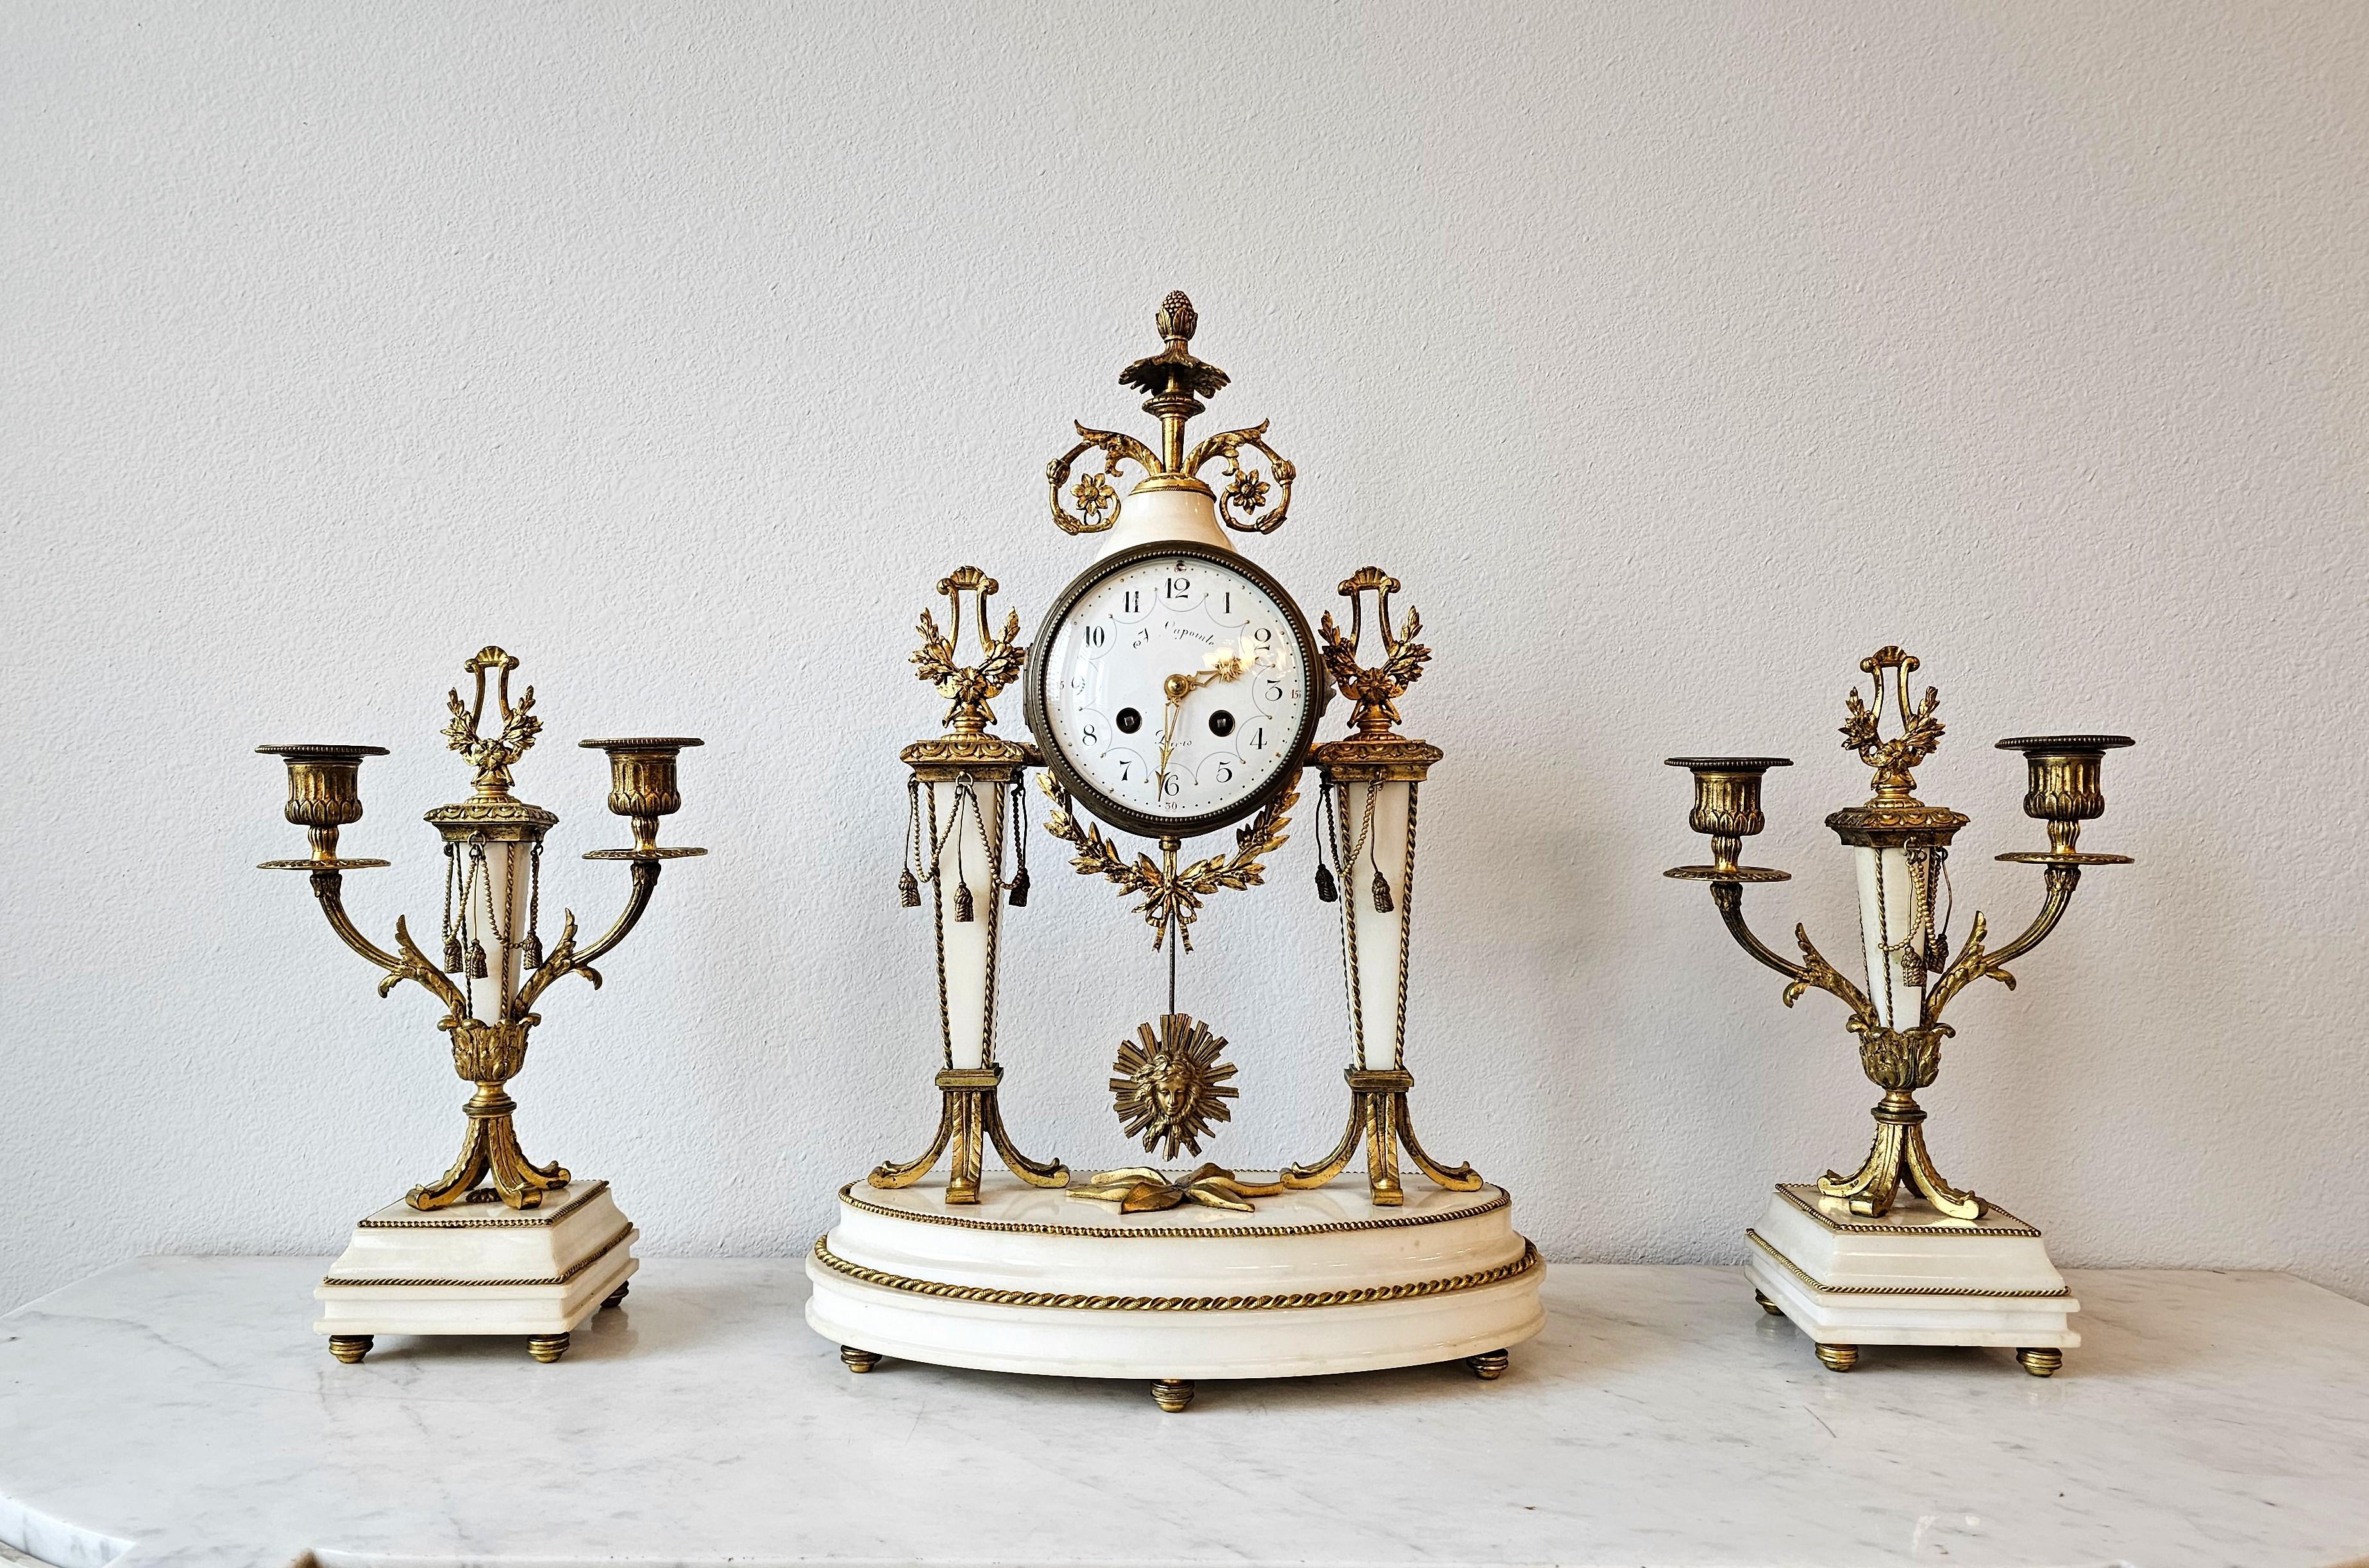 Ein luxuriöser französischer Louis XVI-Stil vergoldete Bronze Ormolu und Alabaster (Onyx-Marmor) dreiteilige Mantel Uhr und Garnitur Set, möglicherweise zugeschrieben Raingo Freres.

Die feine Qualität antiken Ursprungs in Frankreich im späten 19.